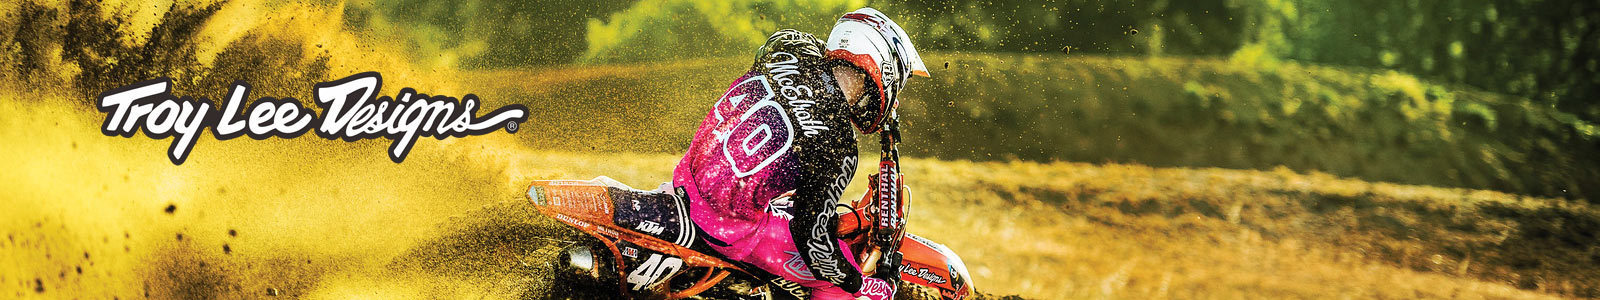 Troy-Lee-Designs-Motocross-Jacken